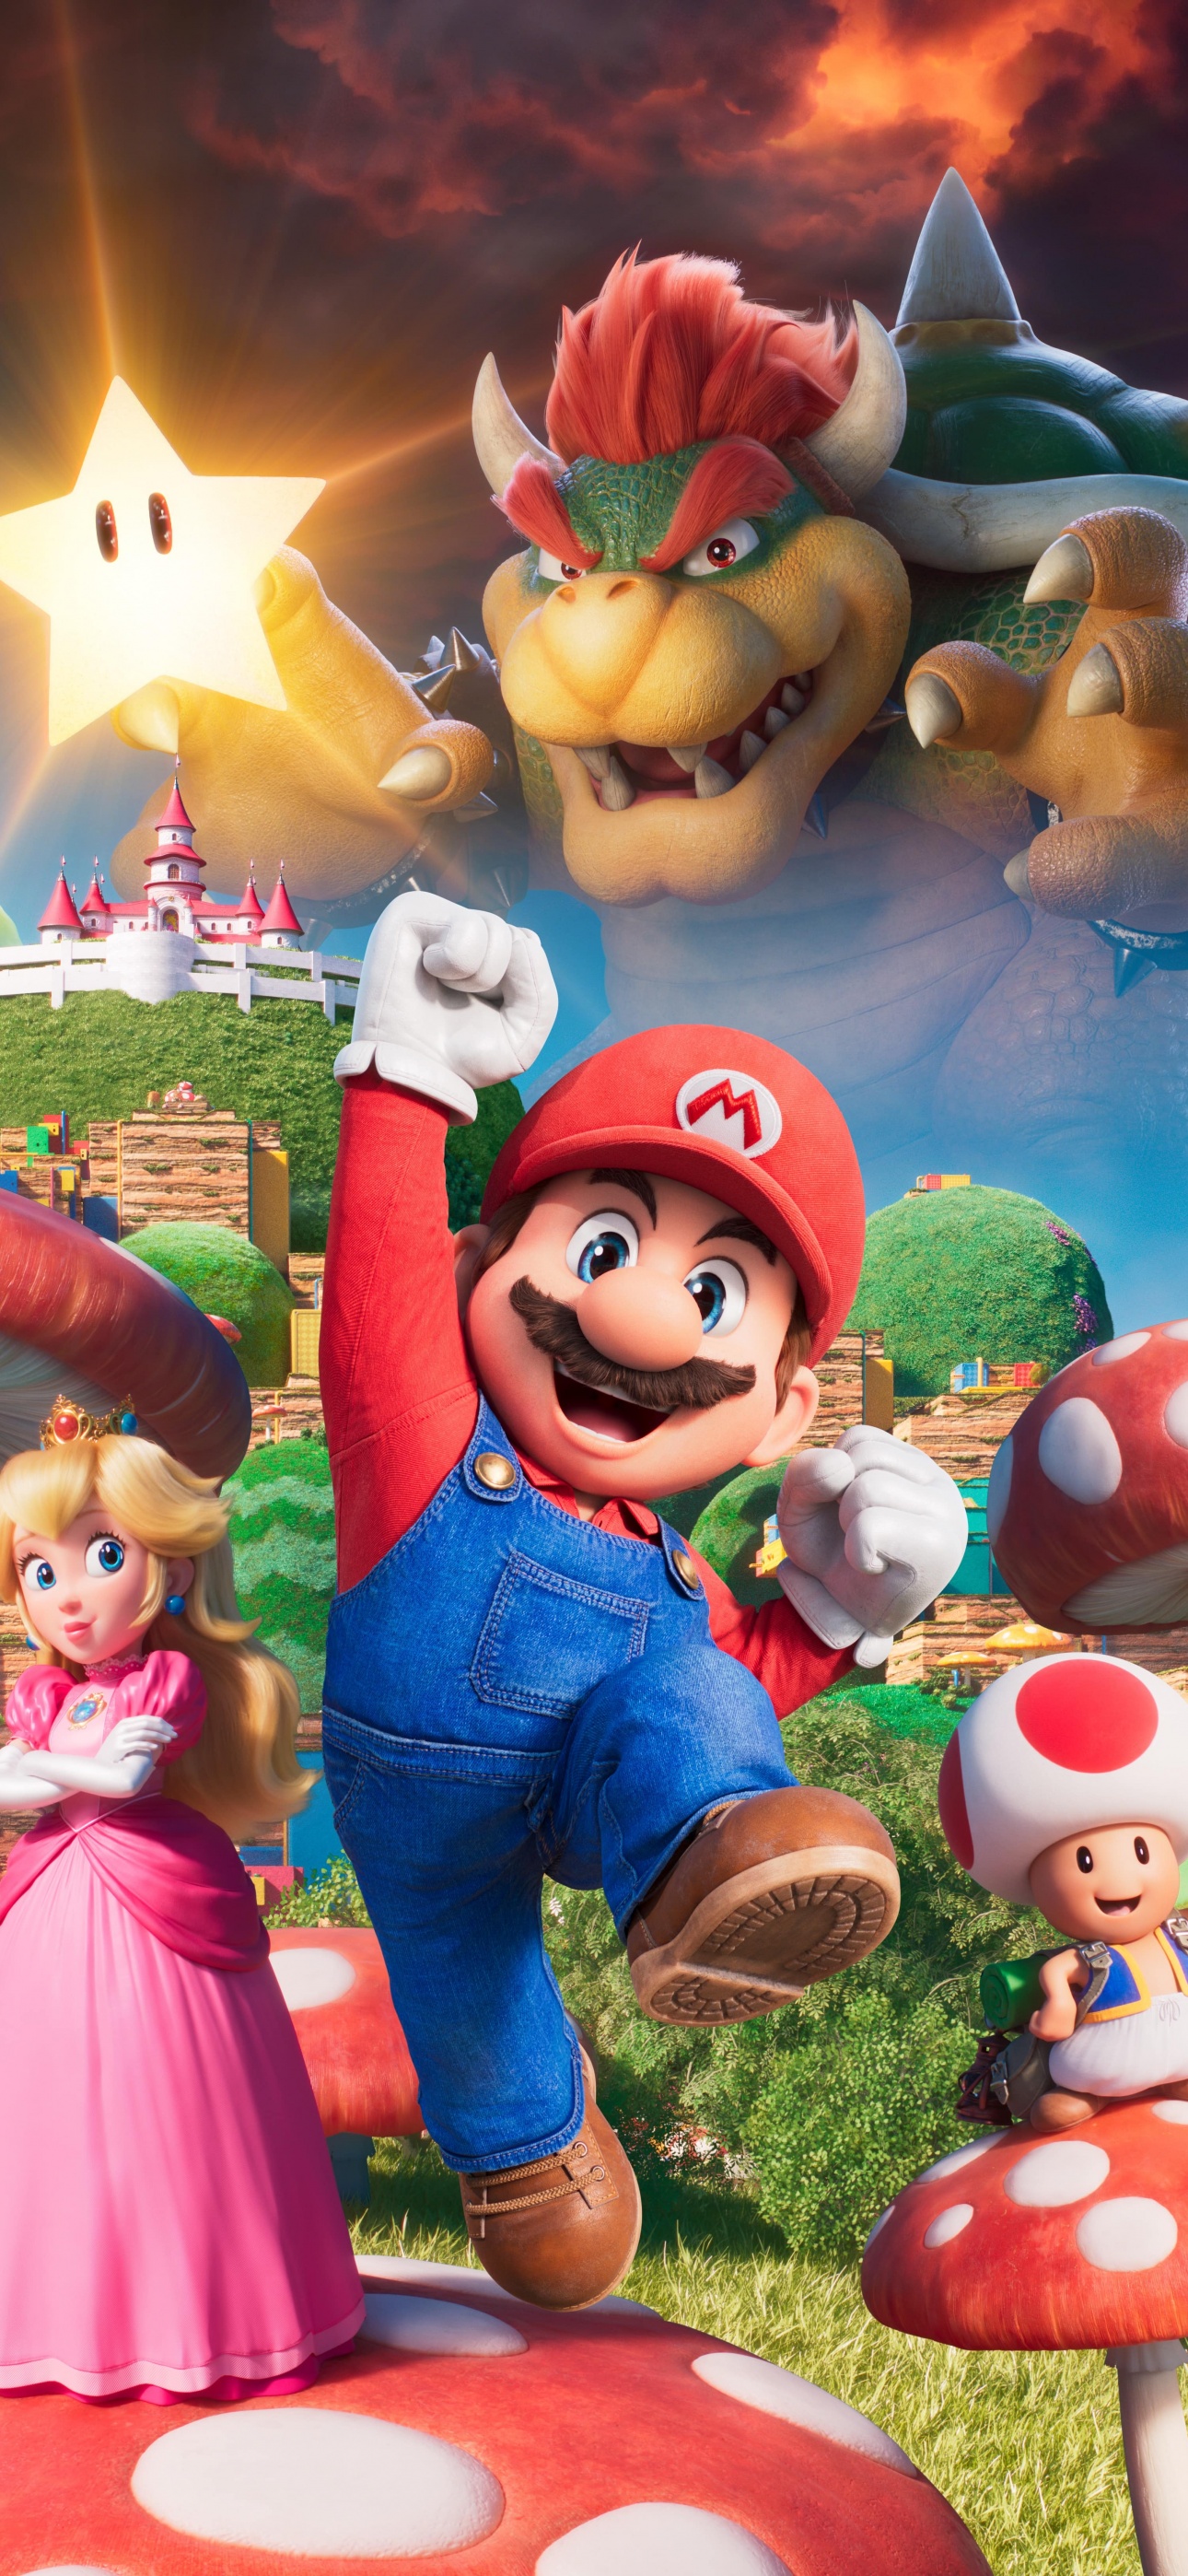 Hình nền  hình minh họa Anime hoạt hình Super Mario Nintendo Wii U  chơi Ảnh chụp màn hình 1920x1080  wallpaperUp  579275  Hình nền đẹp hd   WallHere